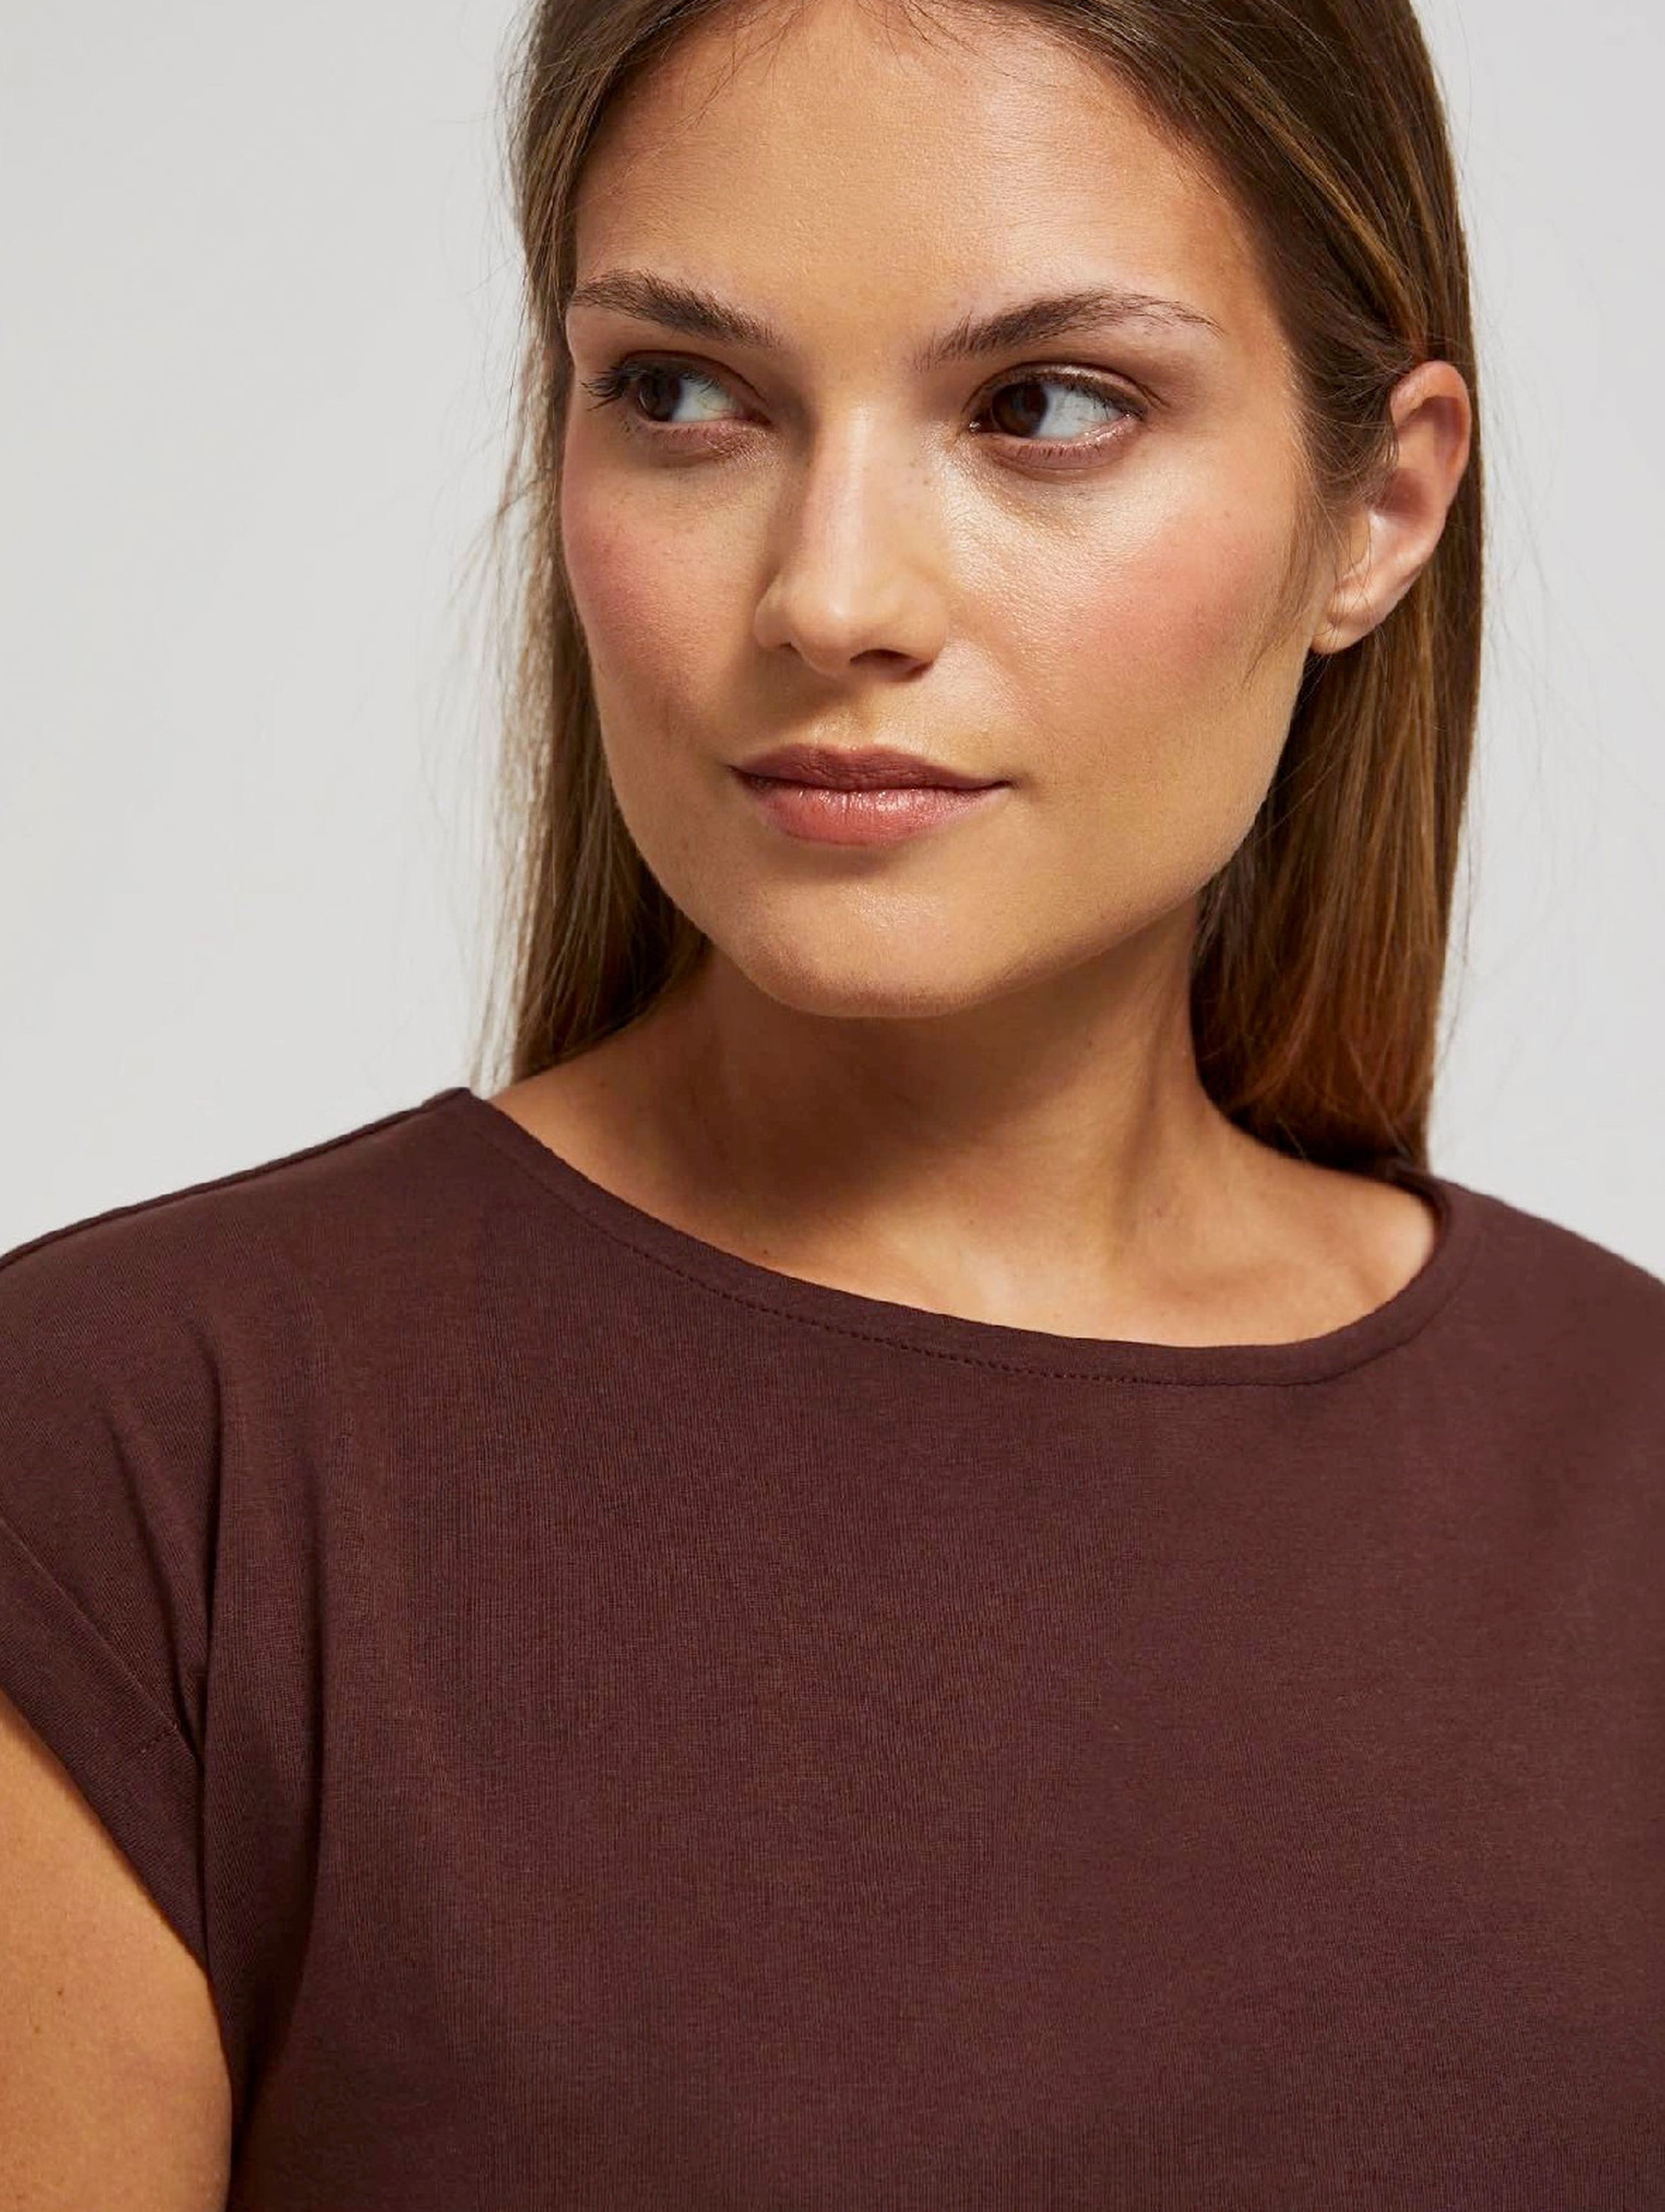 Bawełniany t-shirt damski gładki- brązowy